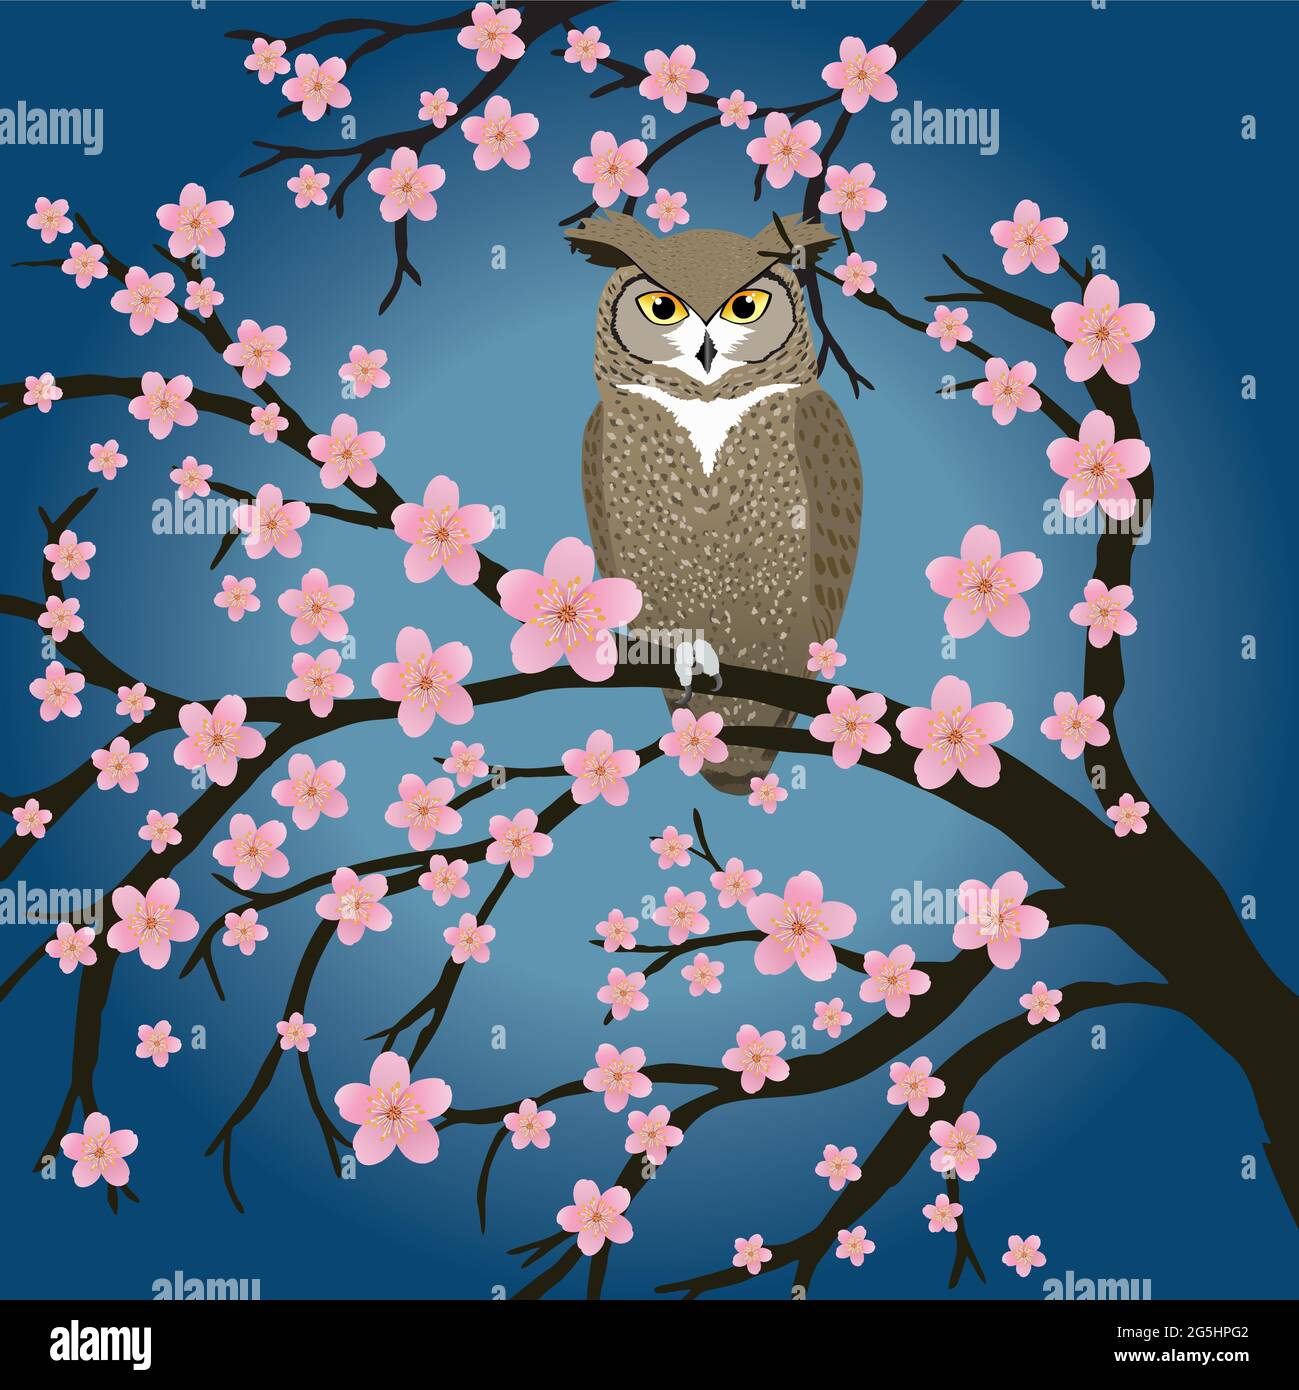 Grande gufo cornuto in un albero di ciliegio fiorito. Lo sfondo è un gradiente blu con un colore più chiaro al centro. Illustrazione Vettoriale